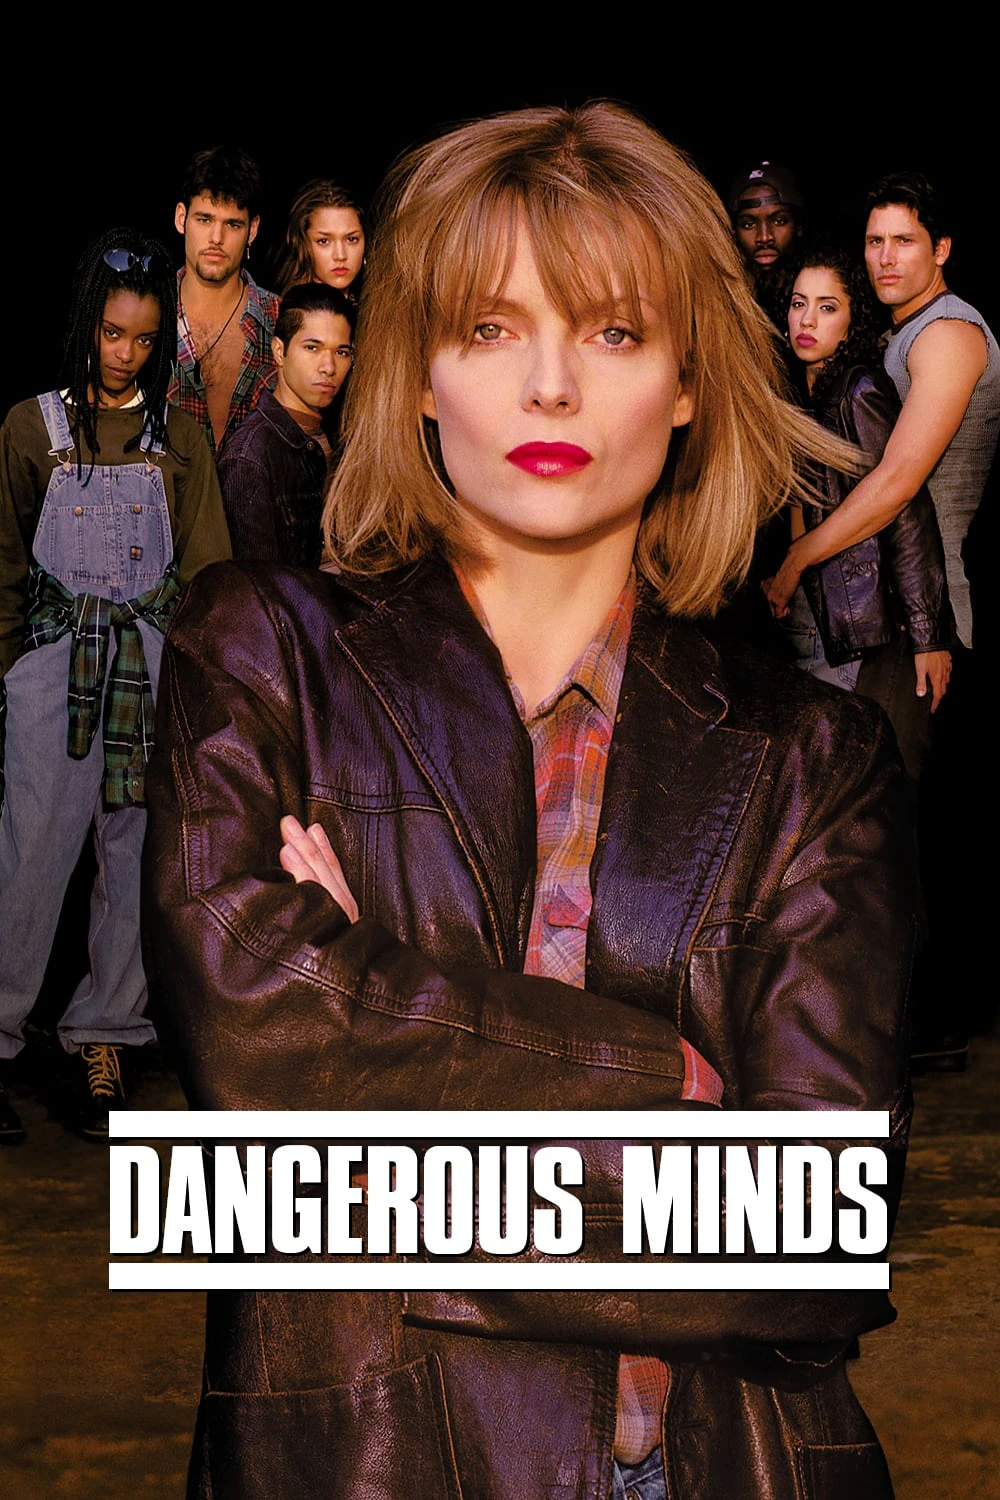 Nhận Thức Nguy Hiểm | Dangerous Minds (1995)